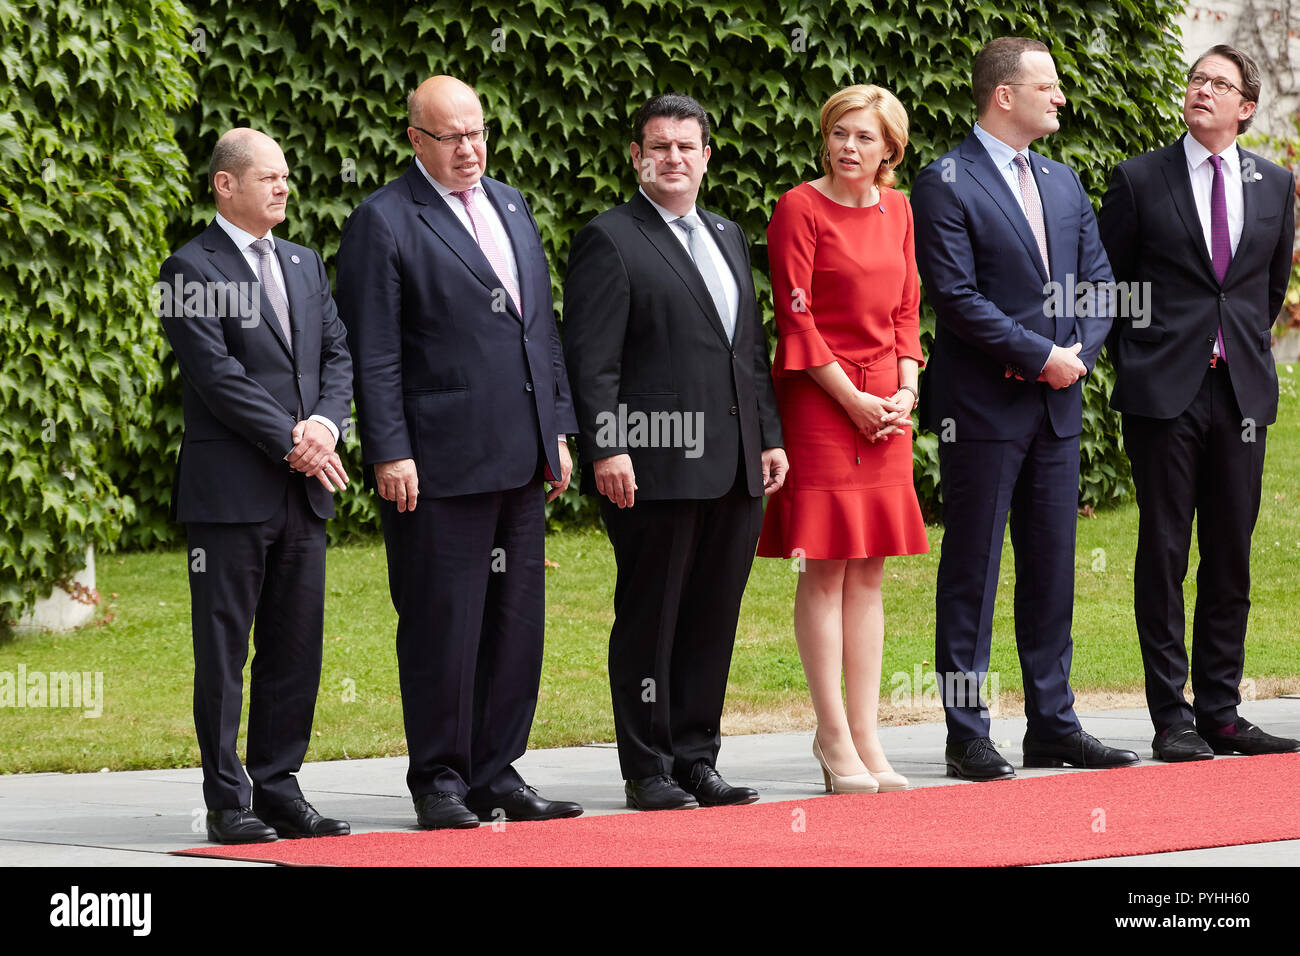 Berlin, Deutschland - Das Bundeskabinett steht auf dem roten Teppich während der Staatsbesuch des chinesischen Ministerpräsidenten im Innenhof von der Ehre der Bundeskanzlei. Stockfoto